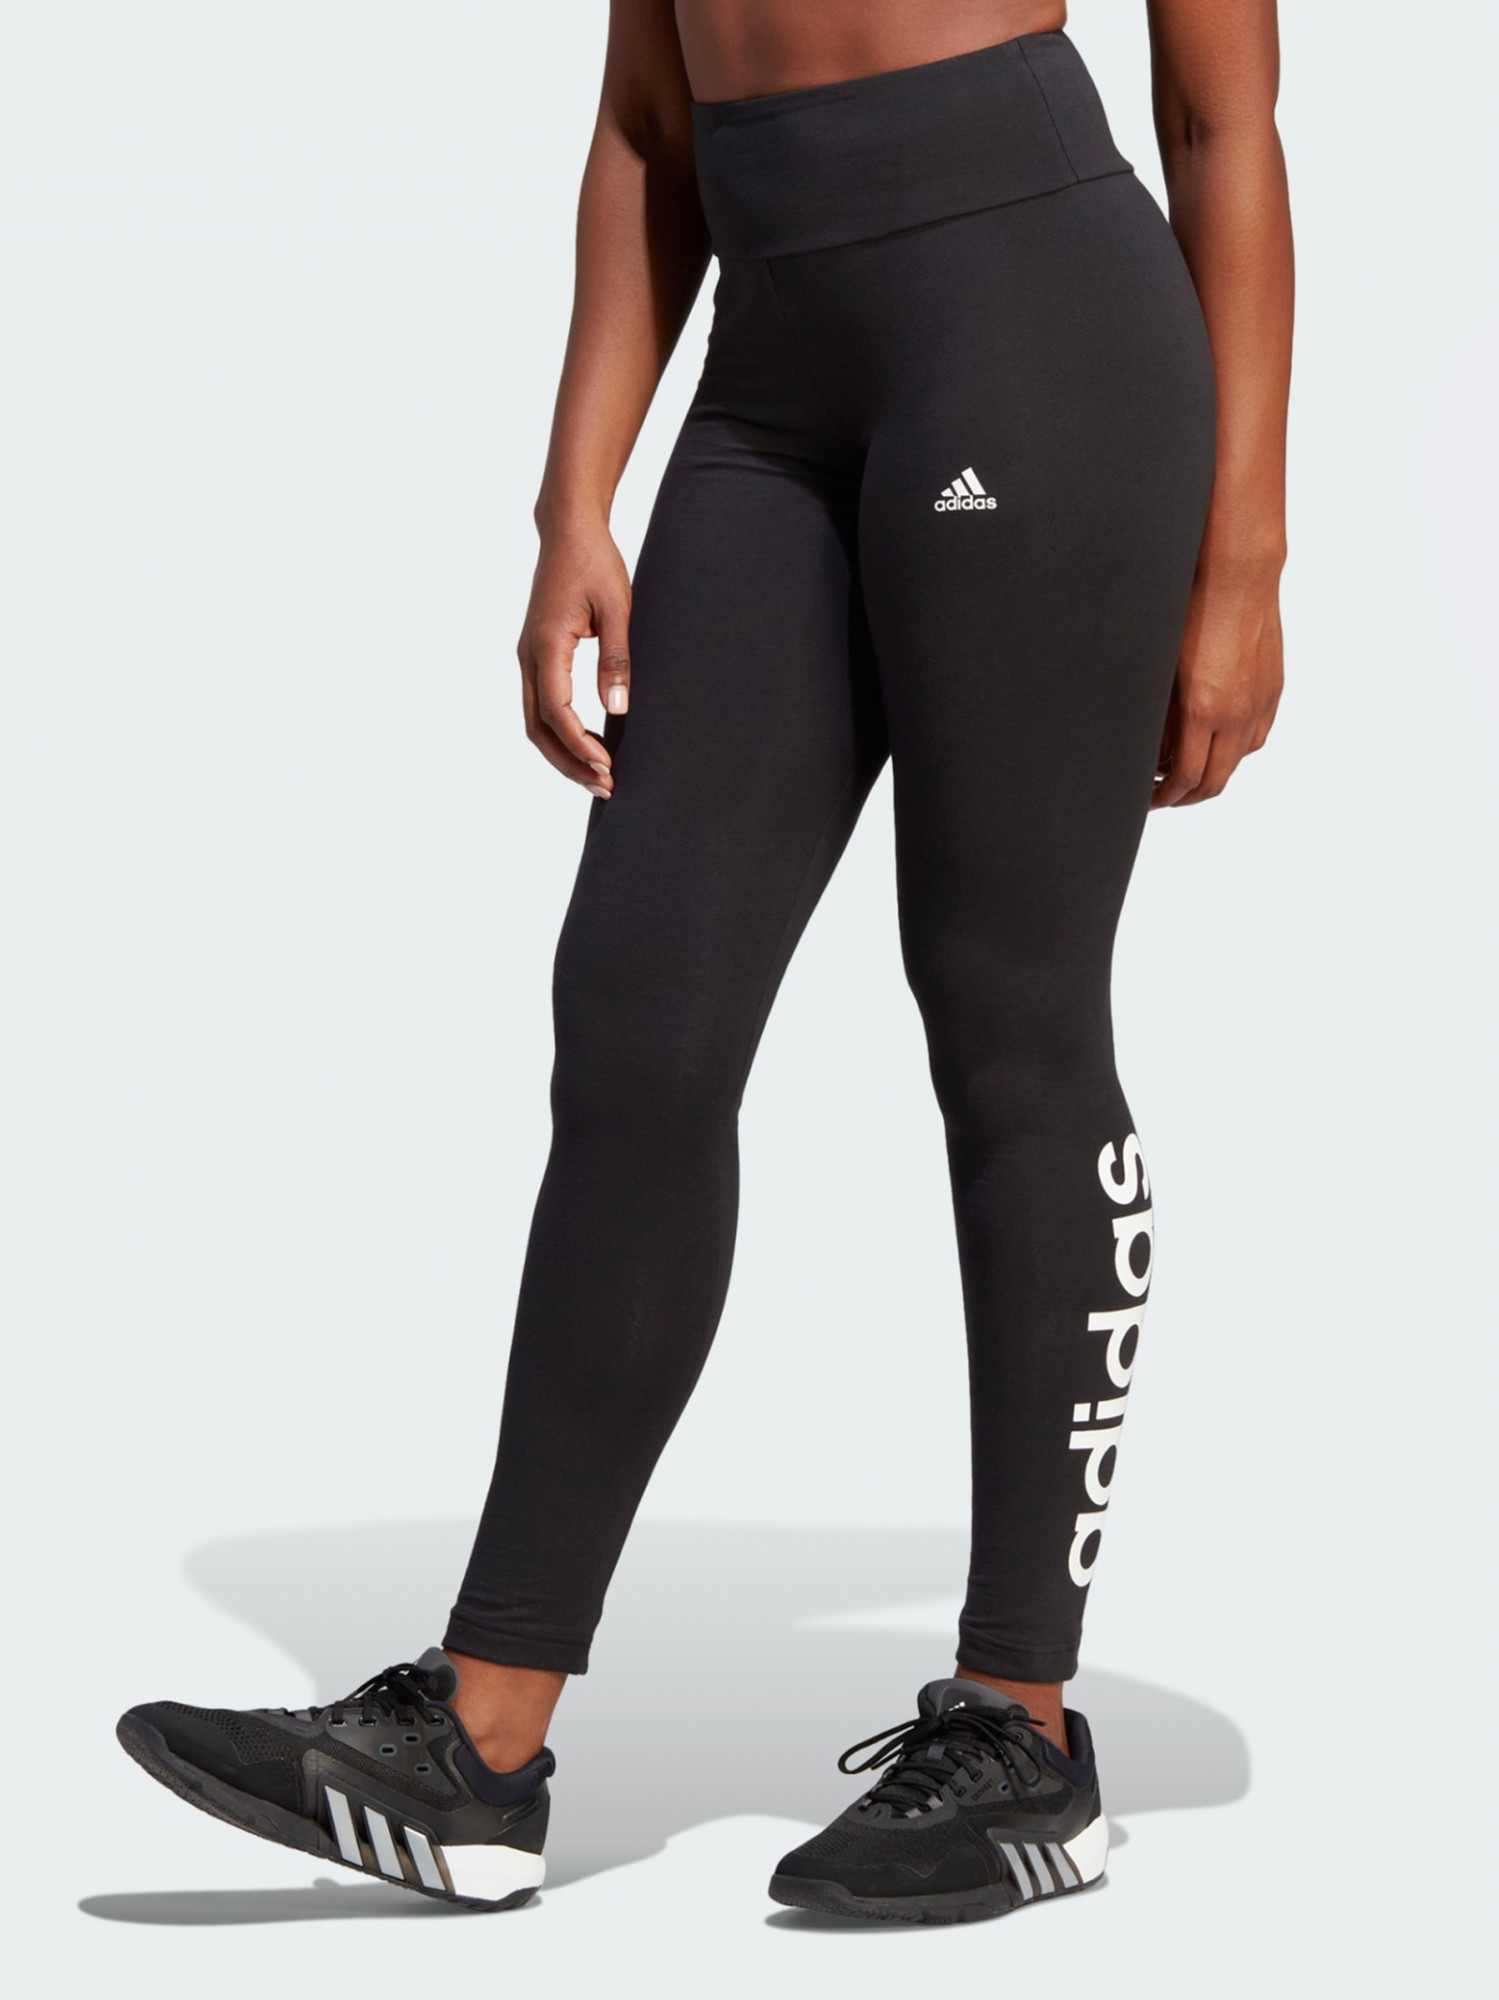 Легінси жіночі Adidas W Lin Leg чорні GL0633 изображение 2